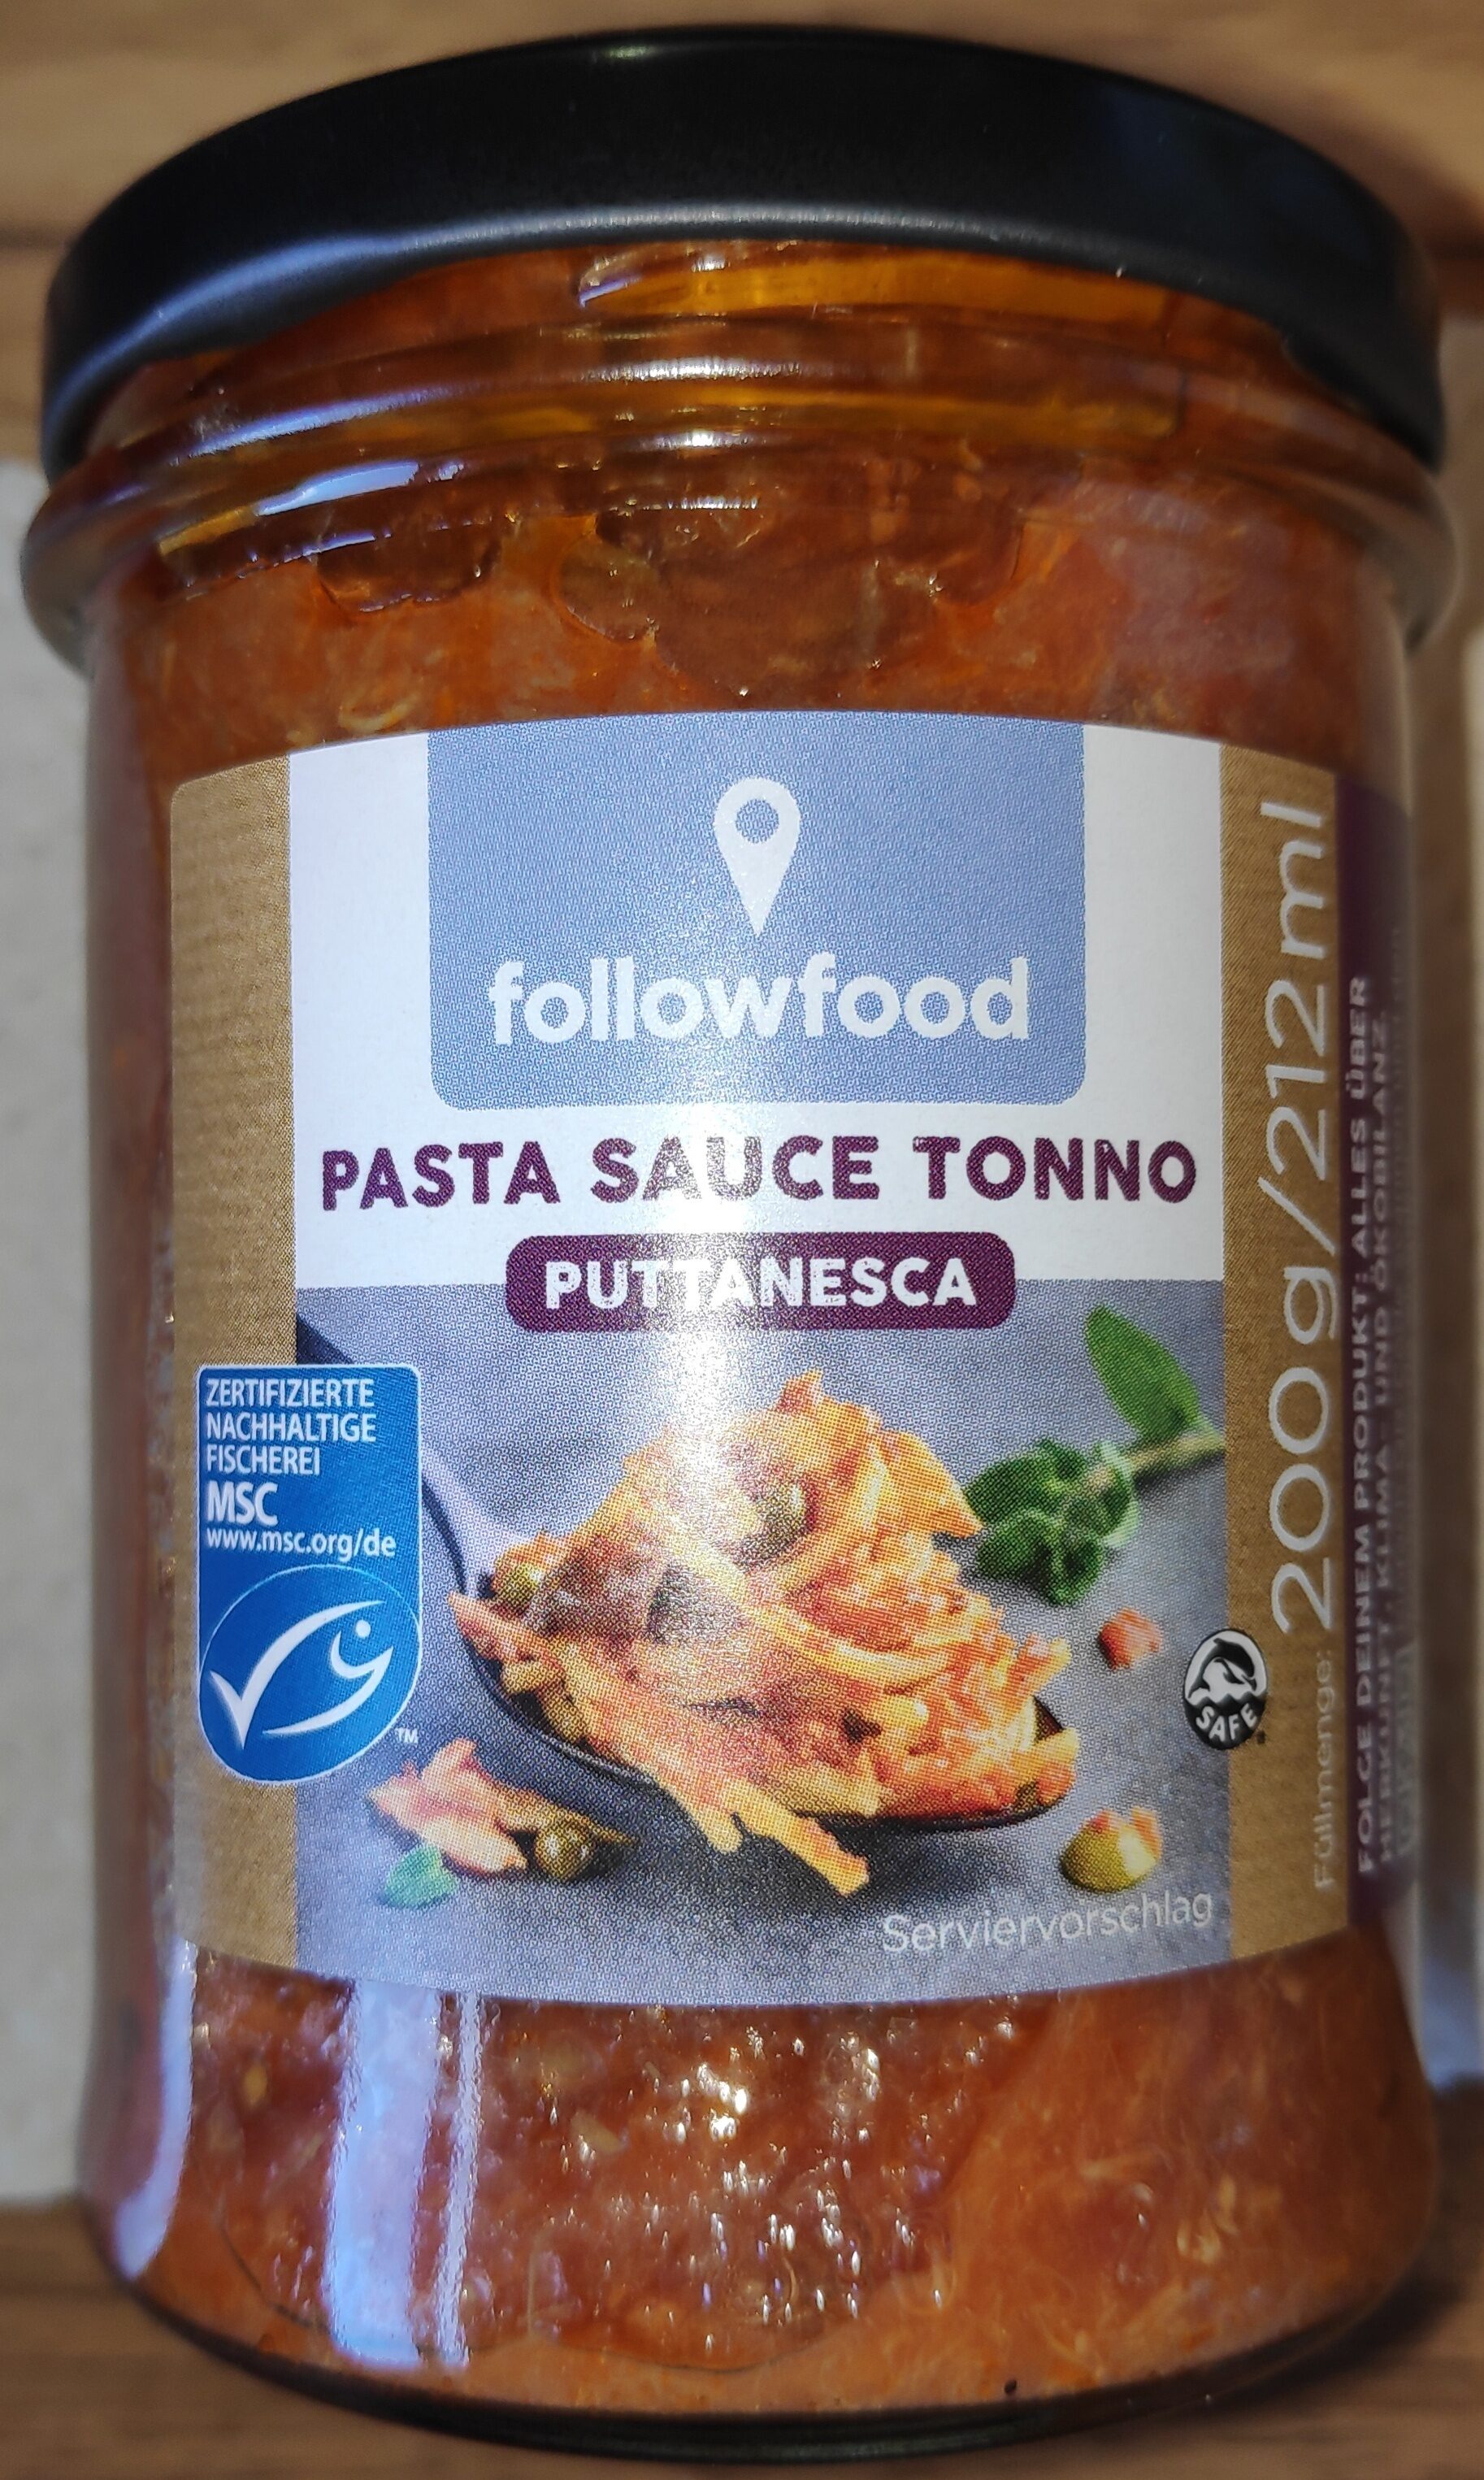 Pasta Sauce Tonno Puttanesca (Tomatensauce mit Thunfisch) - Produkt